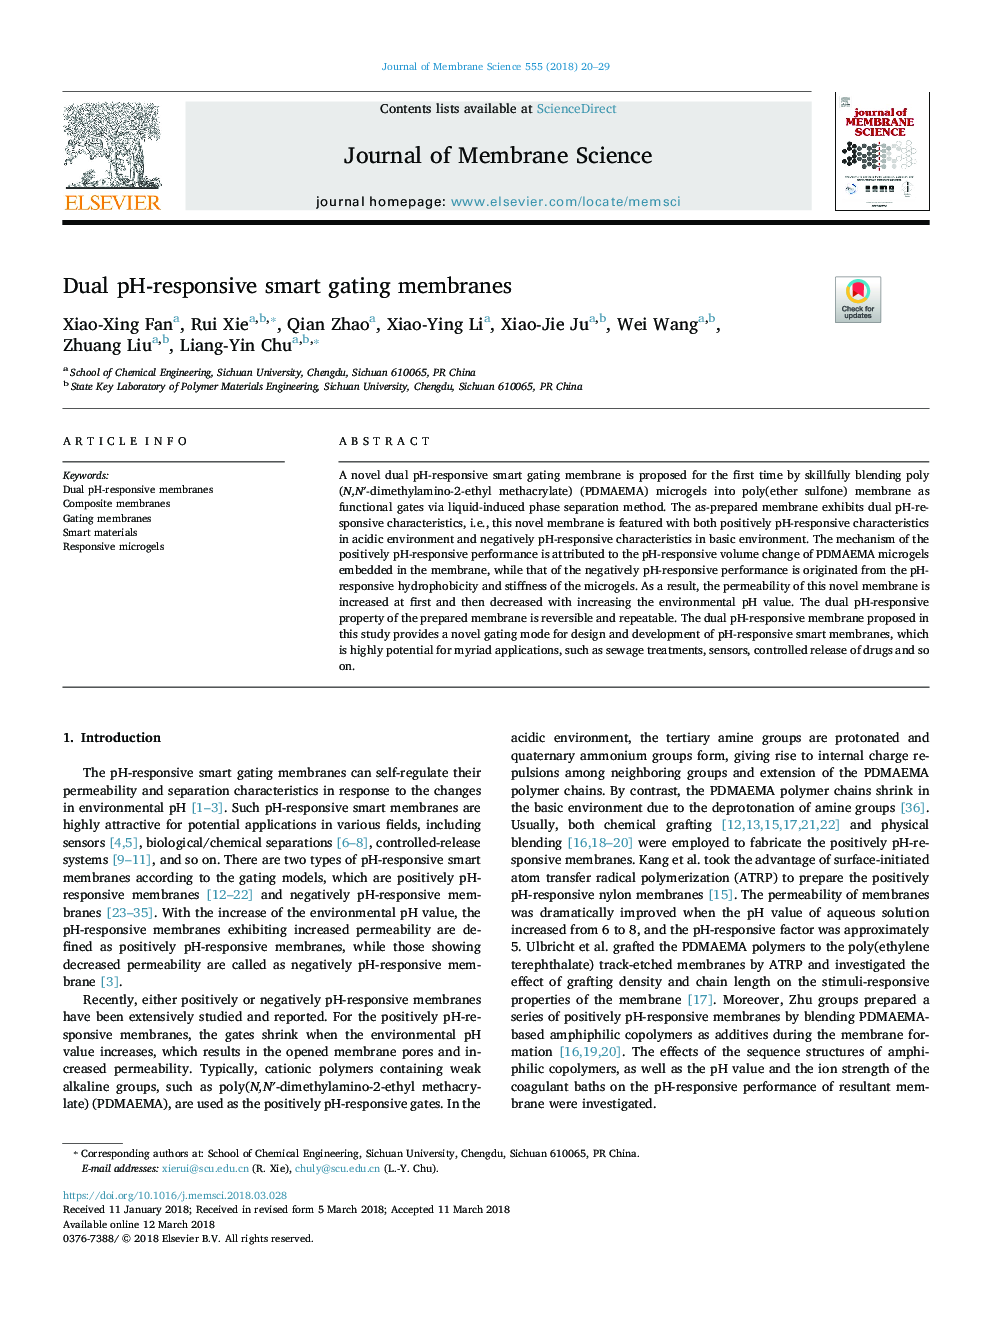 Dual pH-responsive smart gating membranes